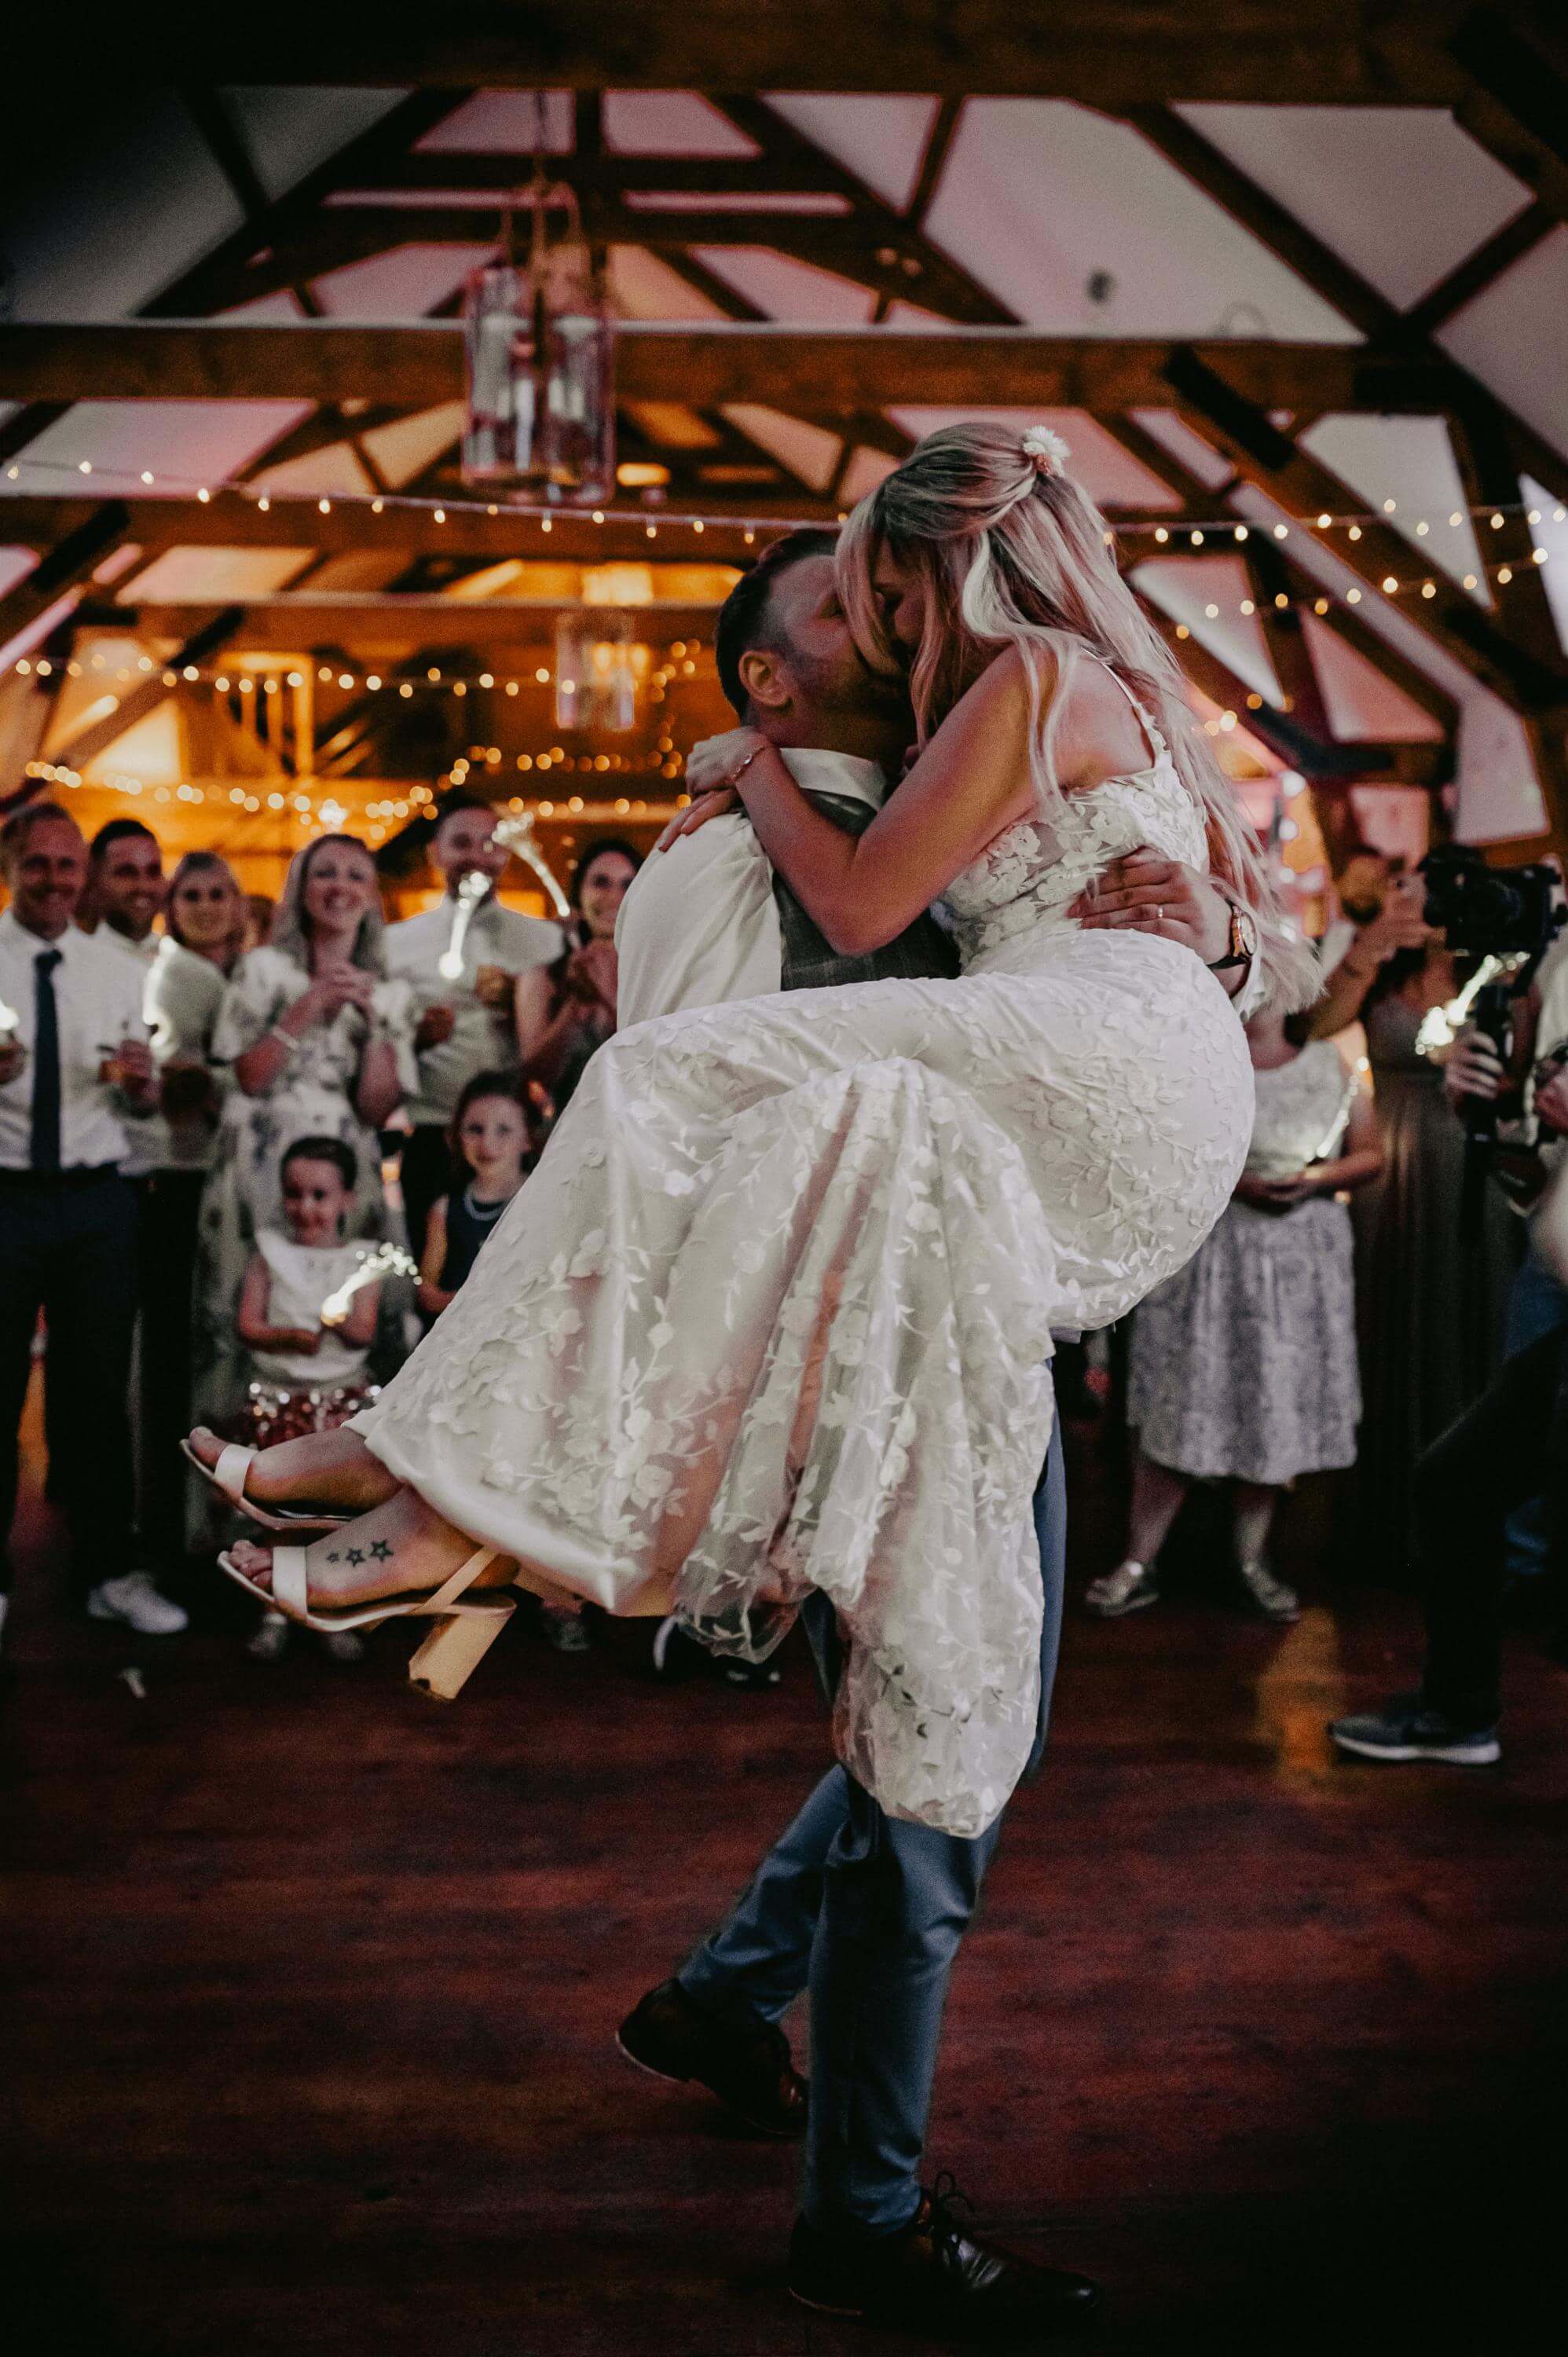 Beim Paartanz in der romantisch geschmückten Scheune mit Lichterketten tanzt das Hochzeitspaar inmitten der Hochzeitsgesellschaft. Er trägt sie auf seinen Armen und beide küssen sich freudig.